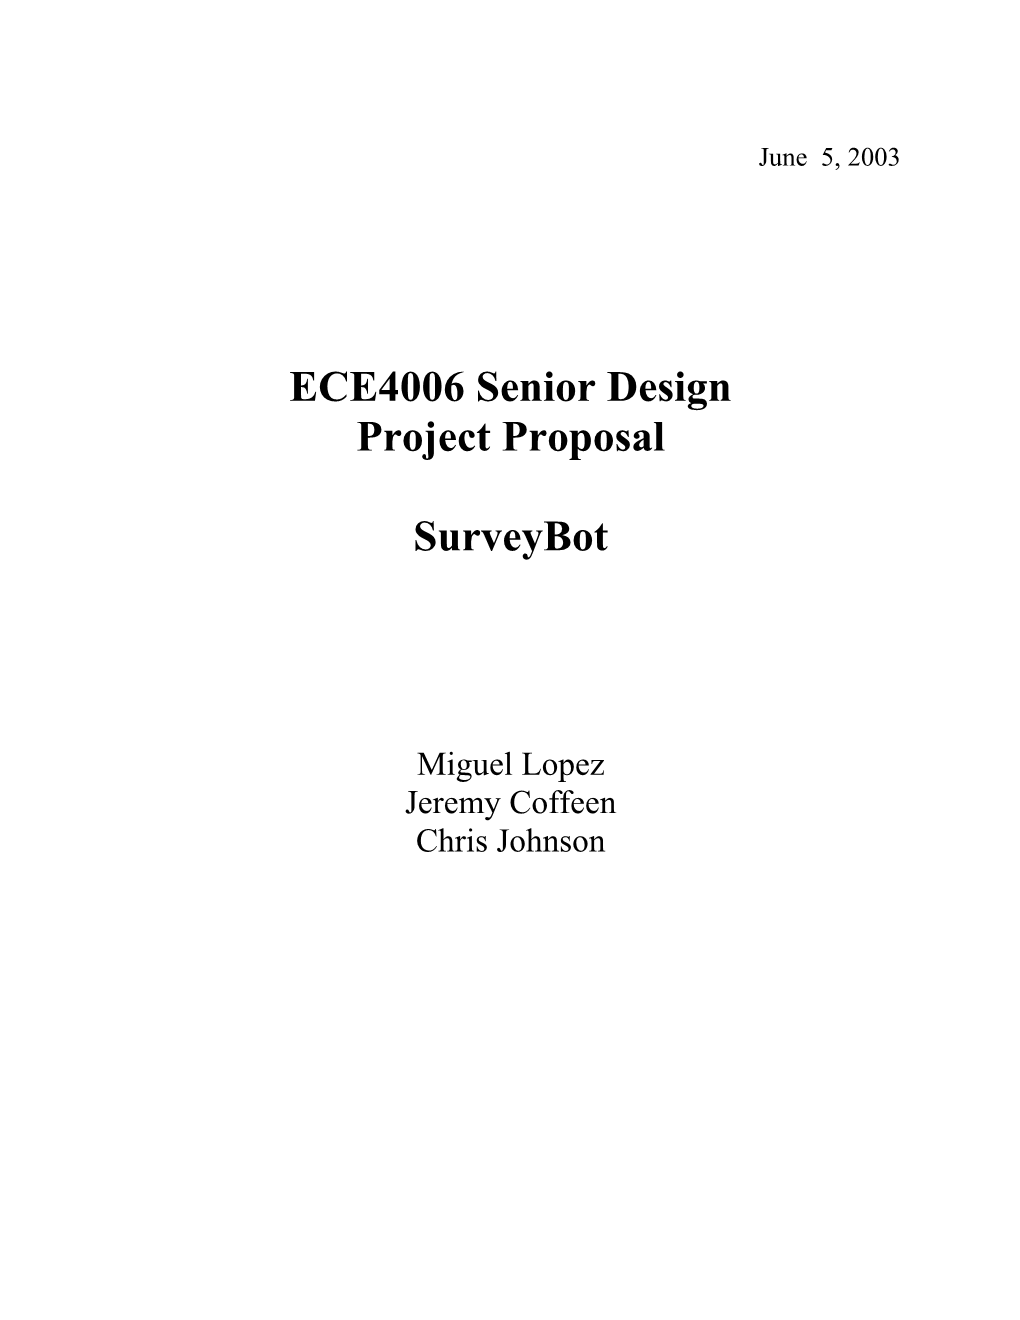 ECE4006 Senior Design